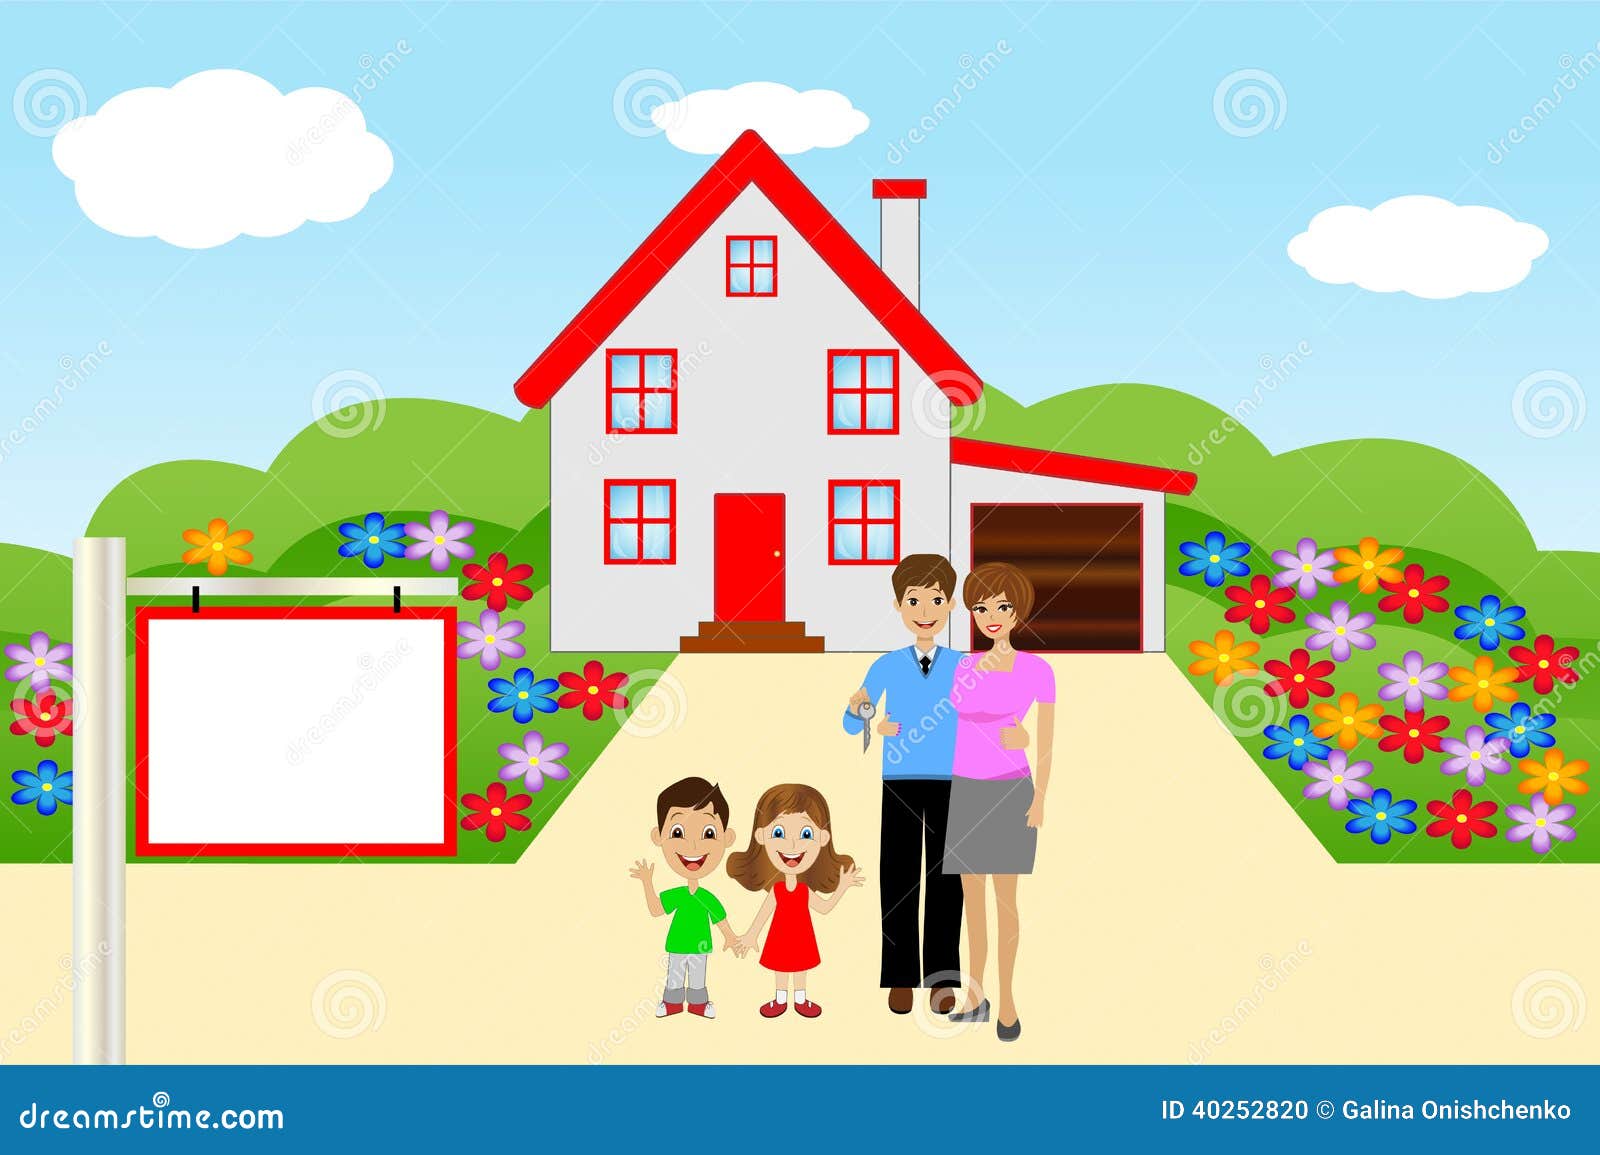 Семья ищет дом. Семья в домике вектор. Домик картинка вектор для детей. Дом семья клипарт.